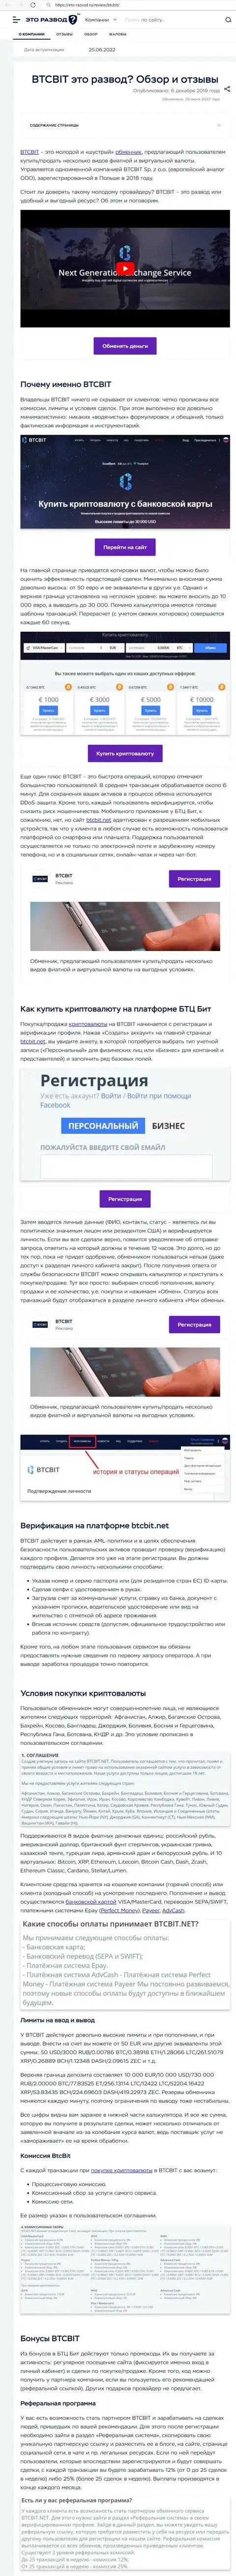 Обзор деятельности и условия совершения сделок обменника BTCBit Net в обзорной статье на сервисе Eto-Razvod Ru